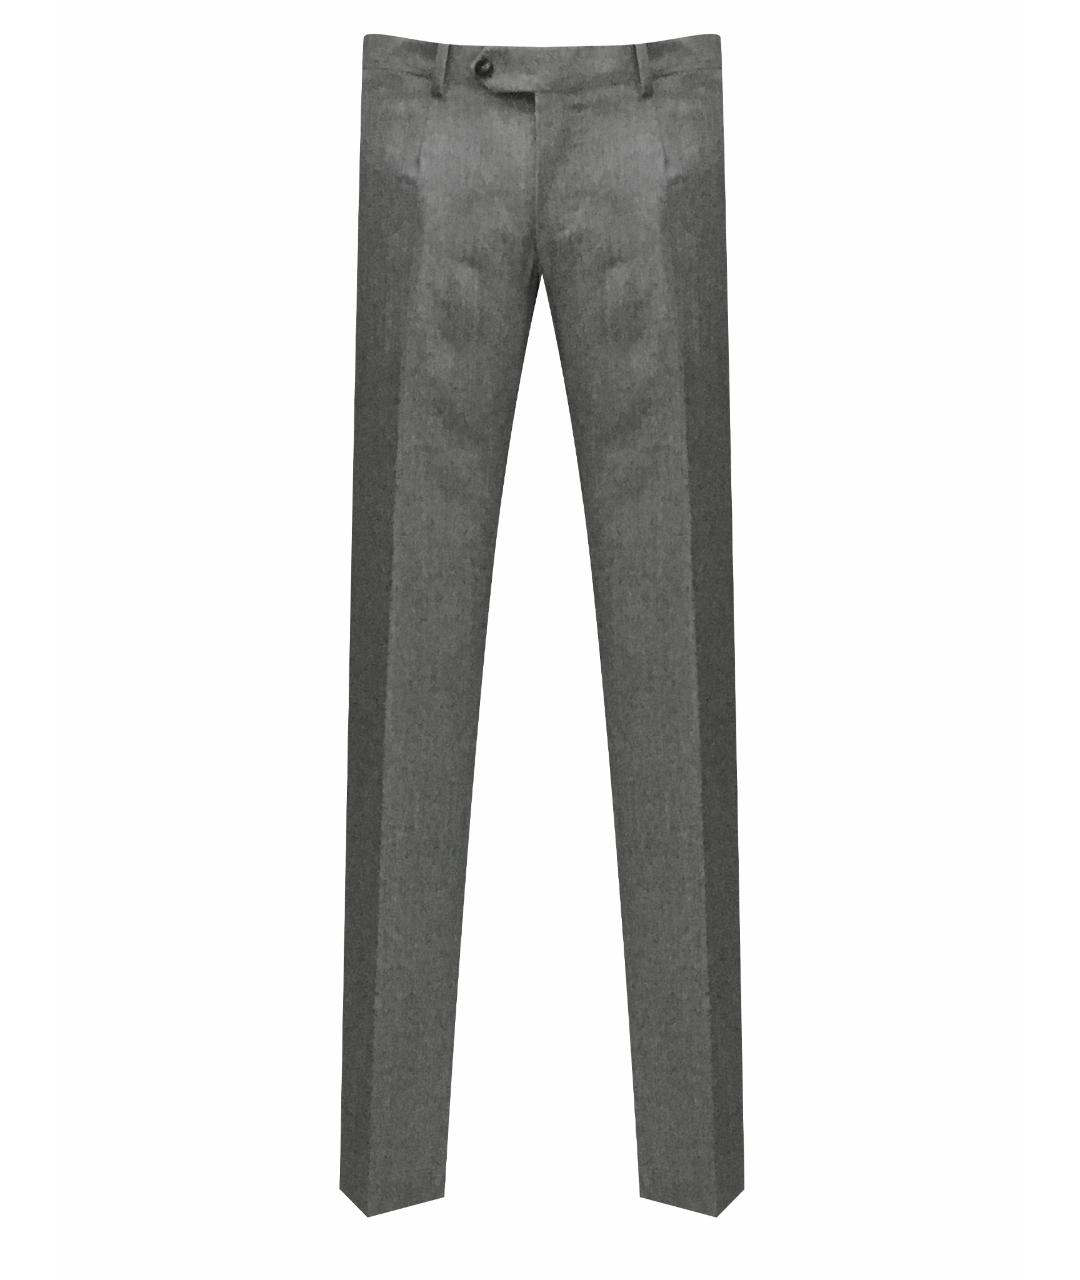 BILANCIONI Шерстяные классические брюки, фото 1